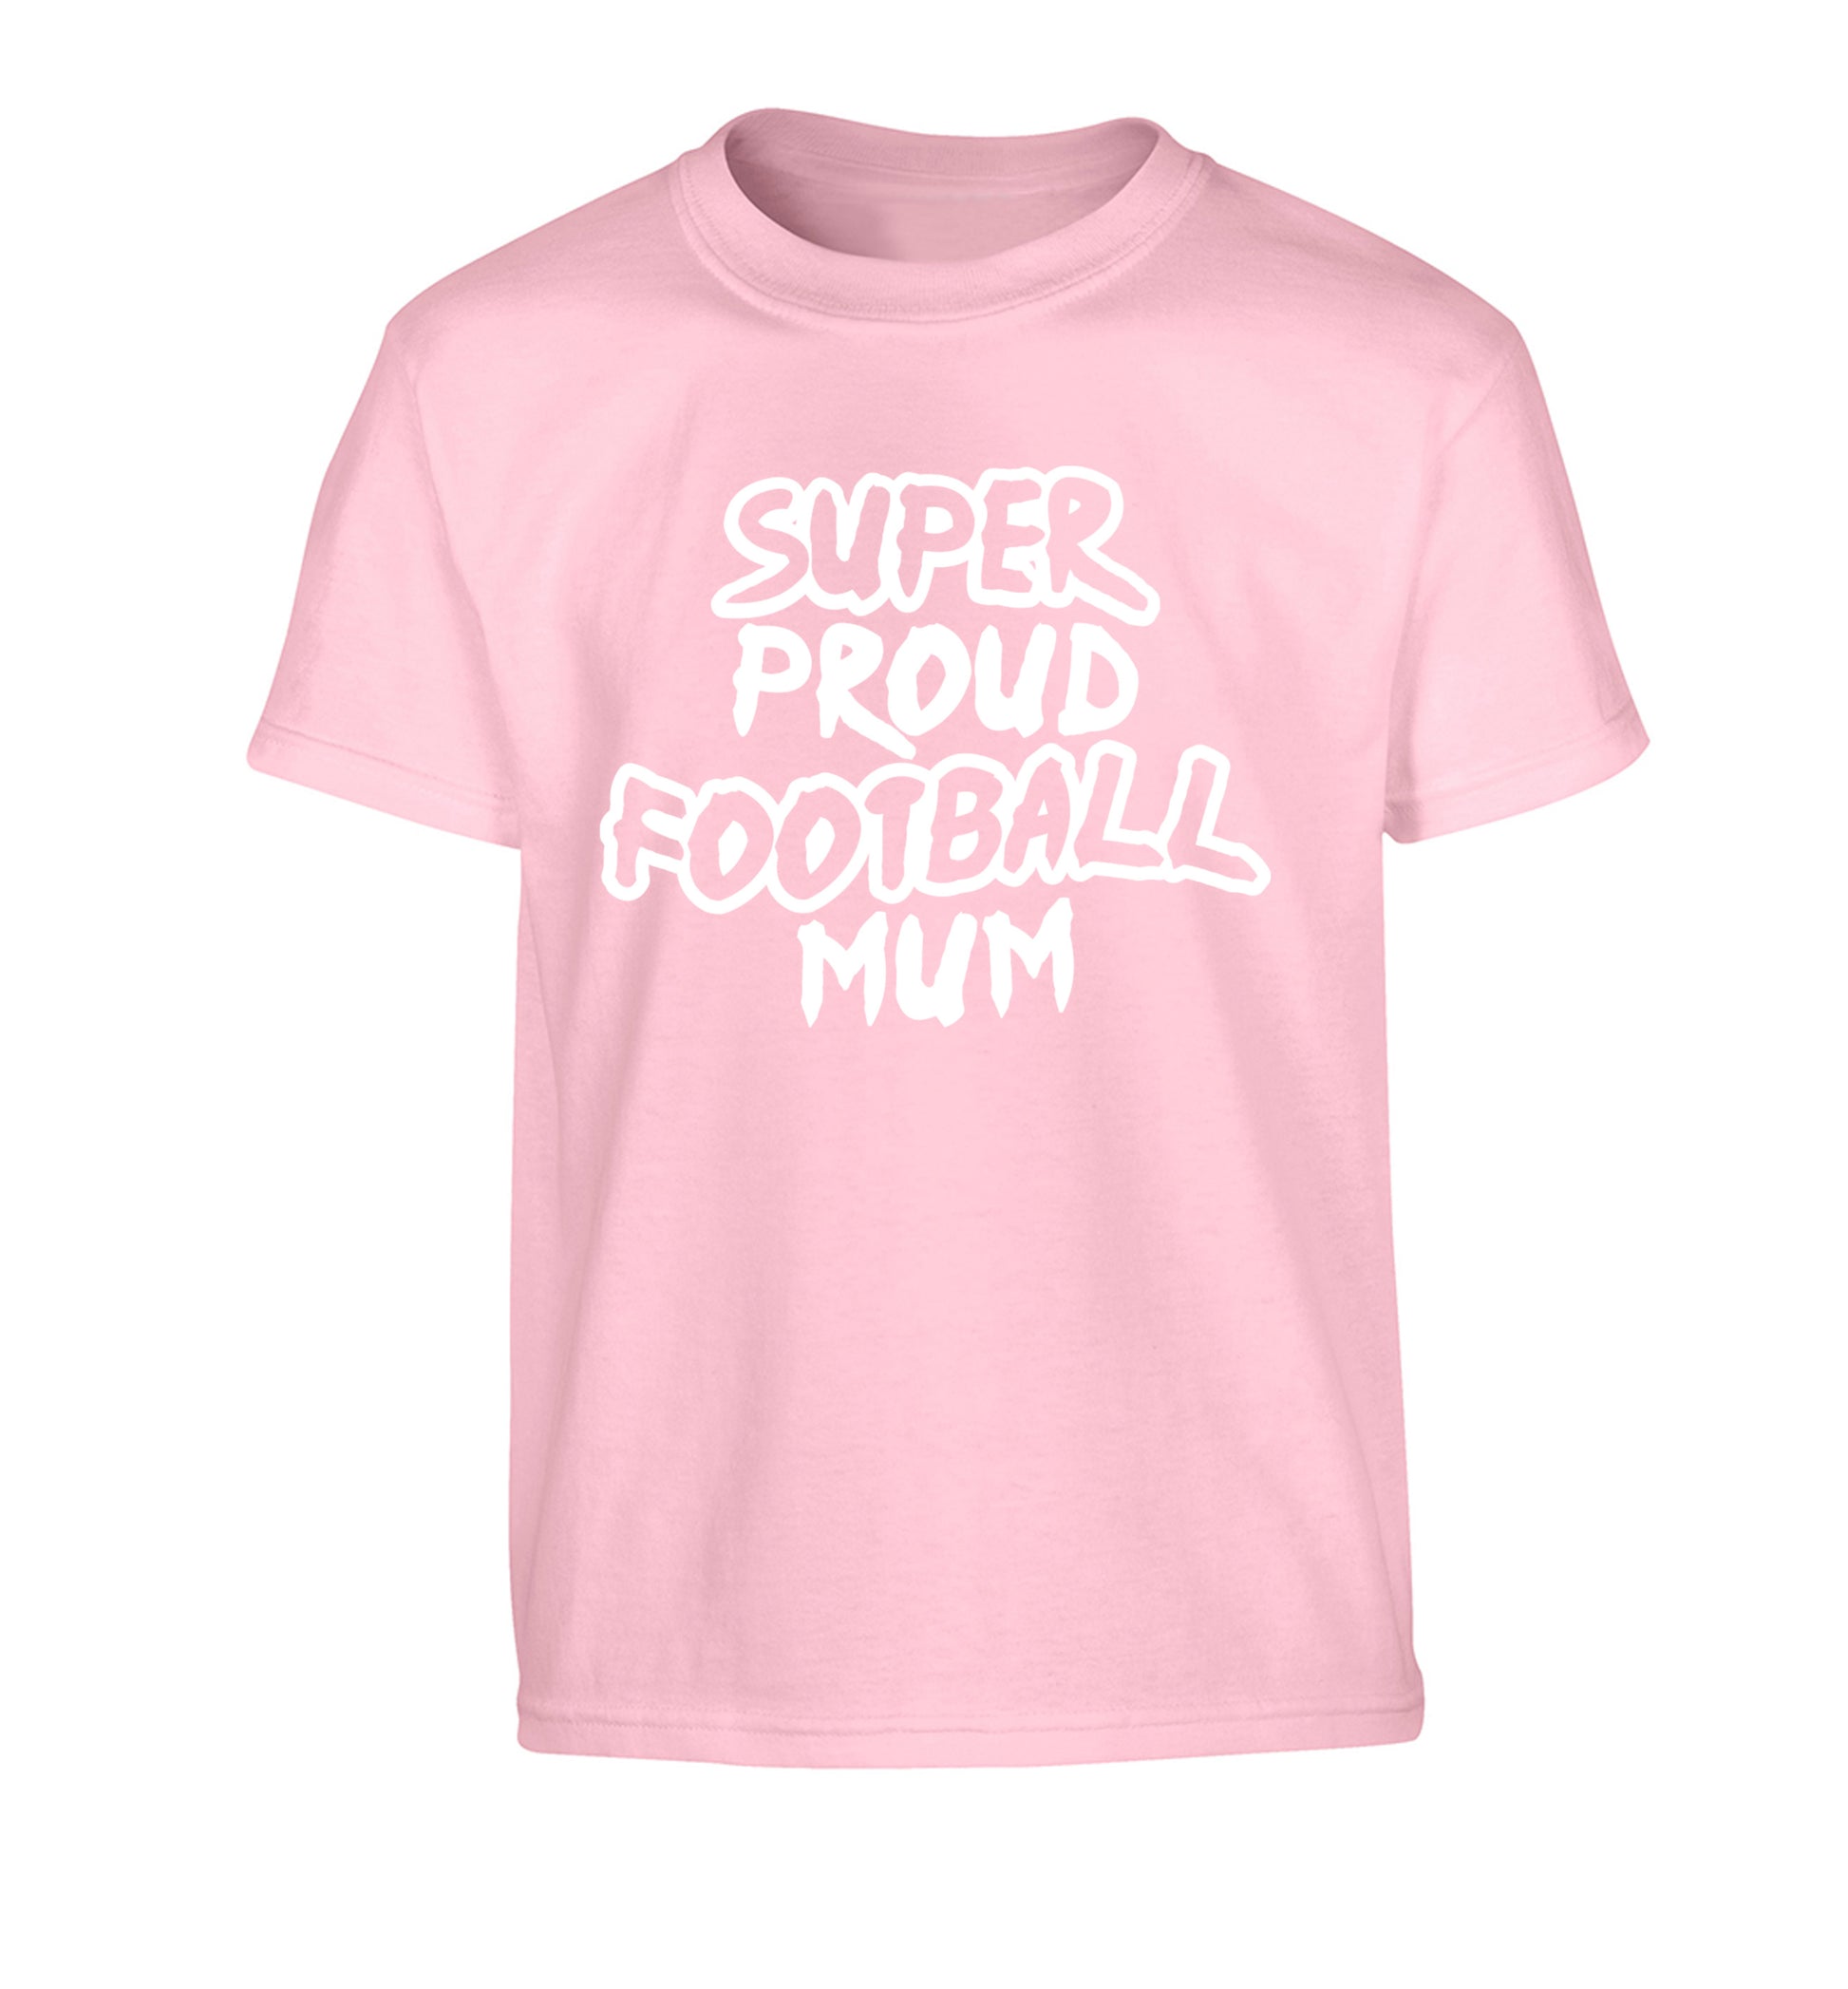 Super proud football mum Children's light pink Tshirt 12-14 Years